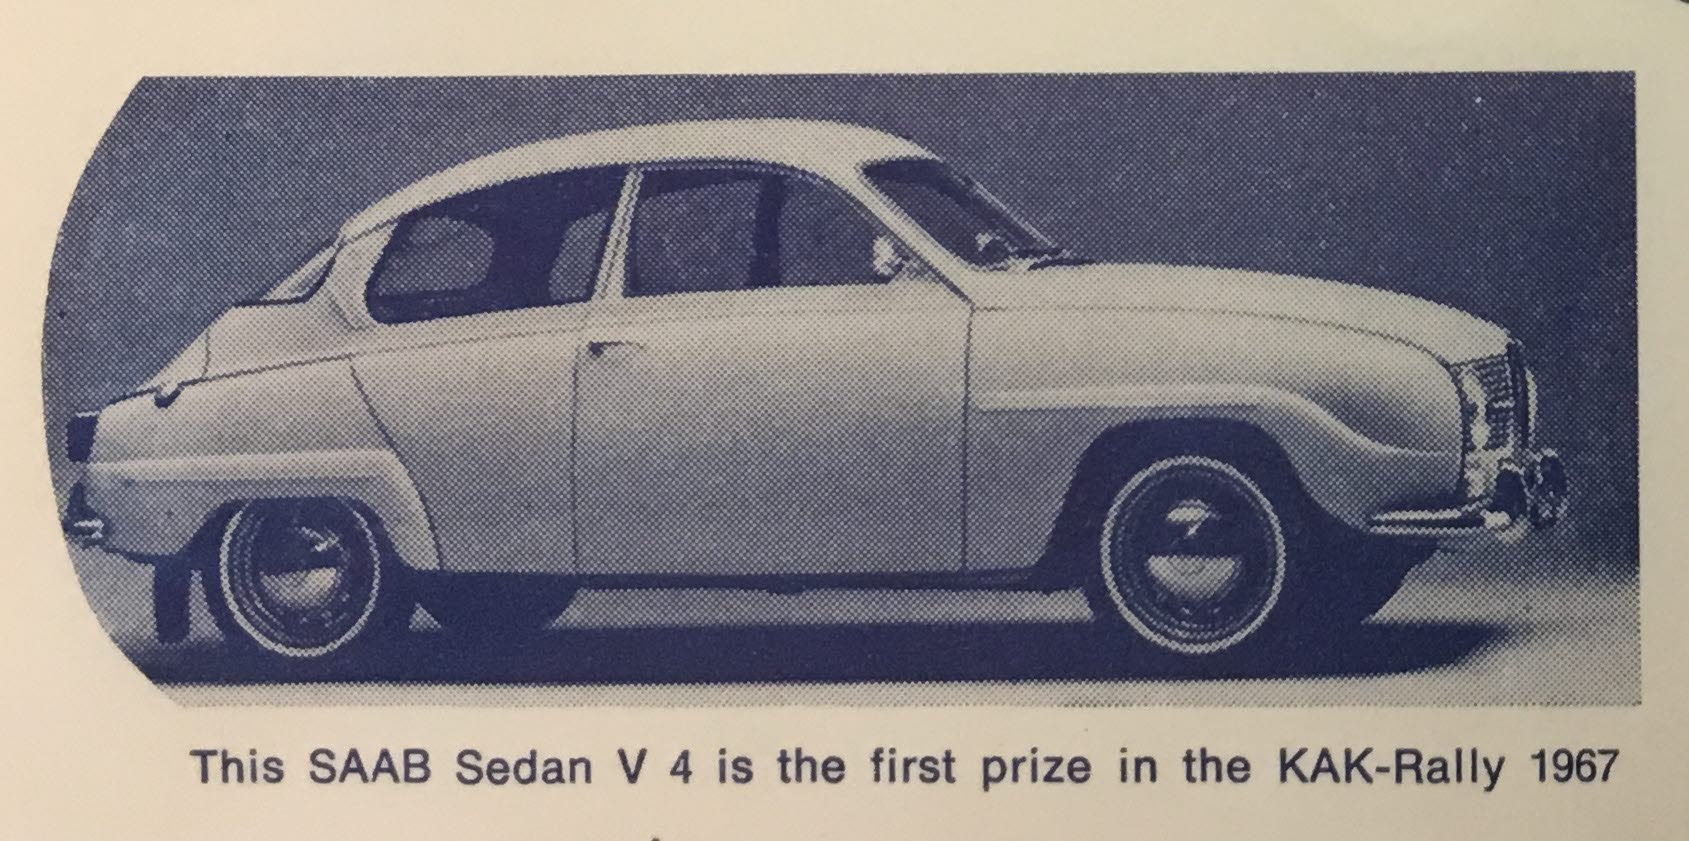 Förstapriset i rallyt 1967 var en SAAB sedan V4